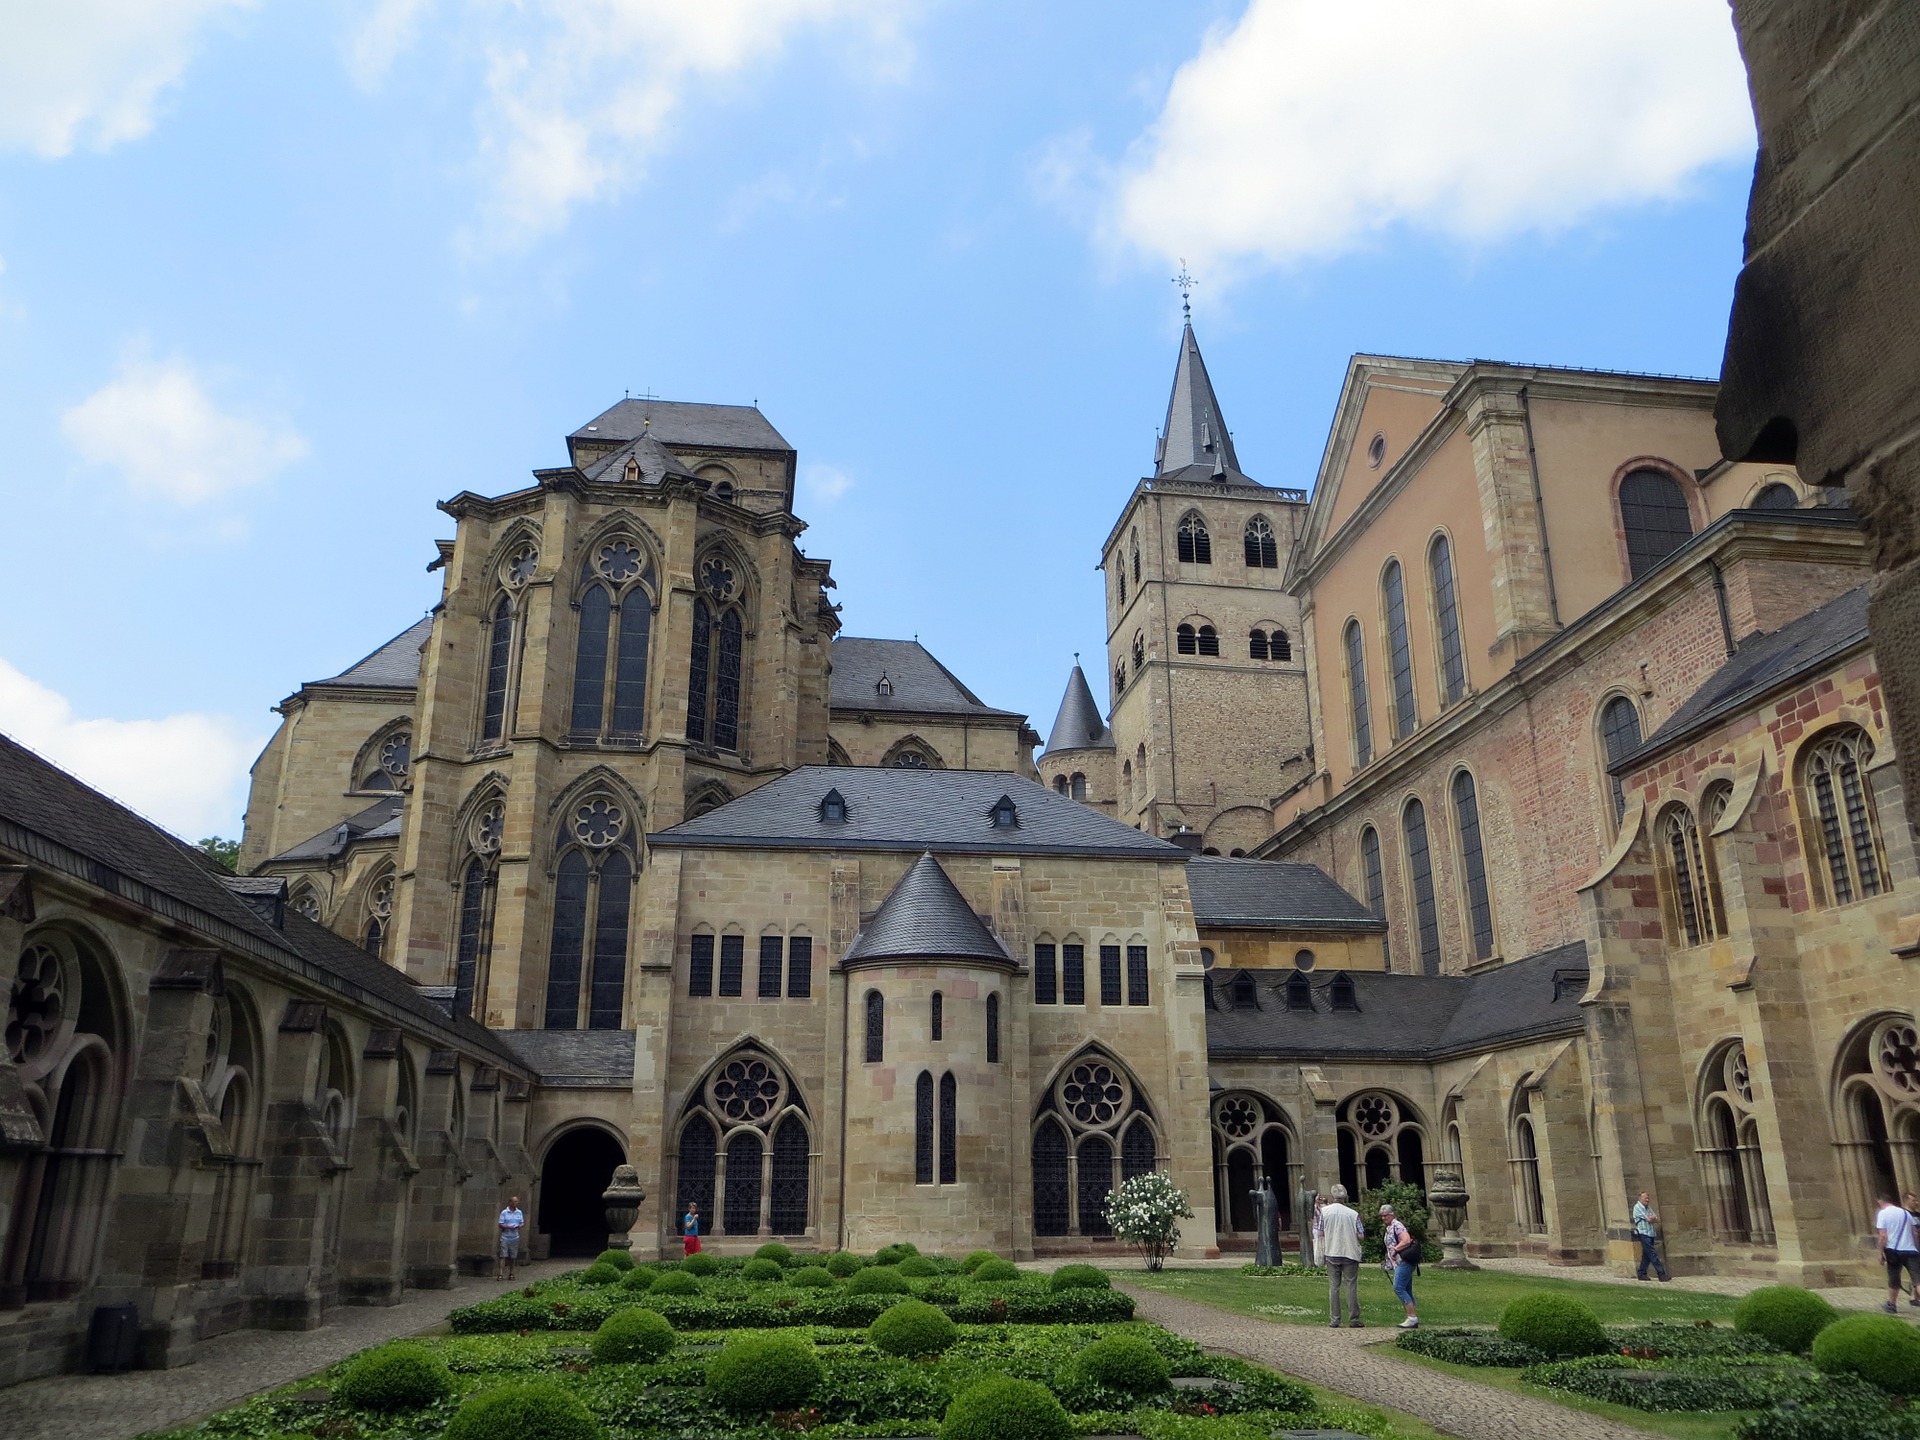 Dom in der ältesten Stadt Trier- Kurzurlaub Mosel